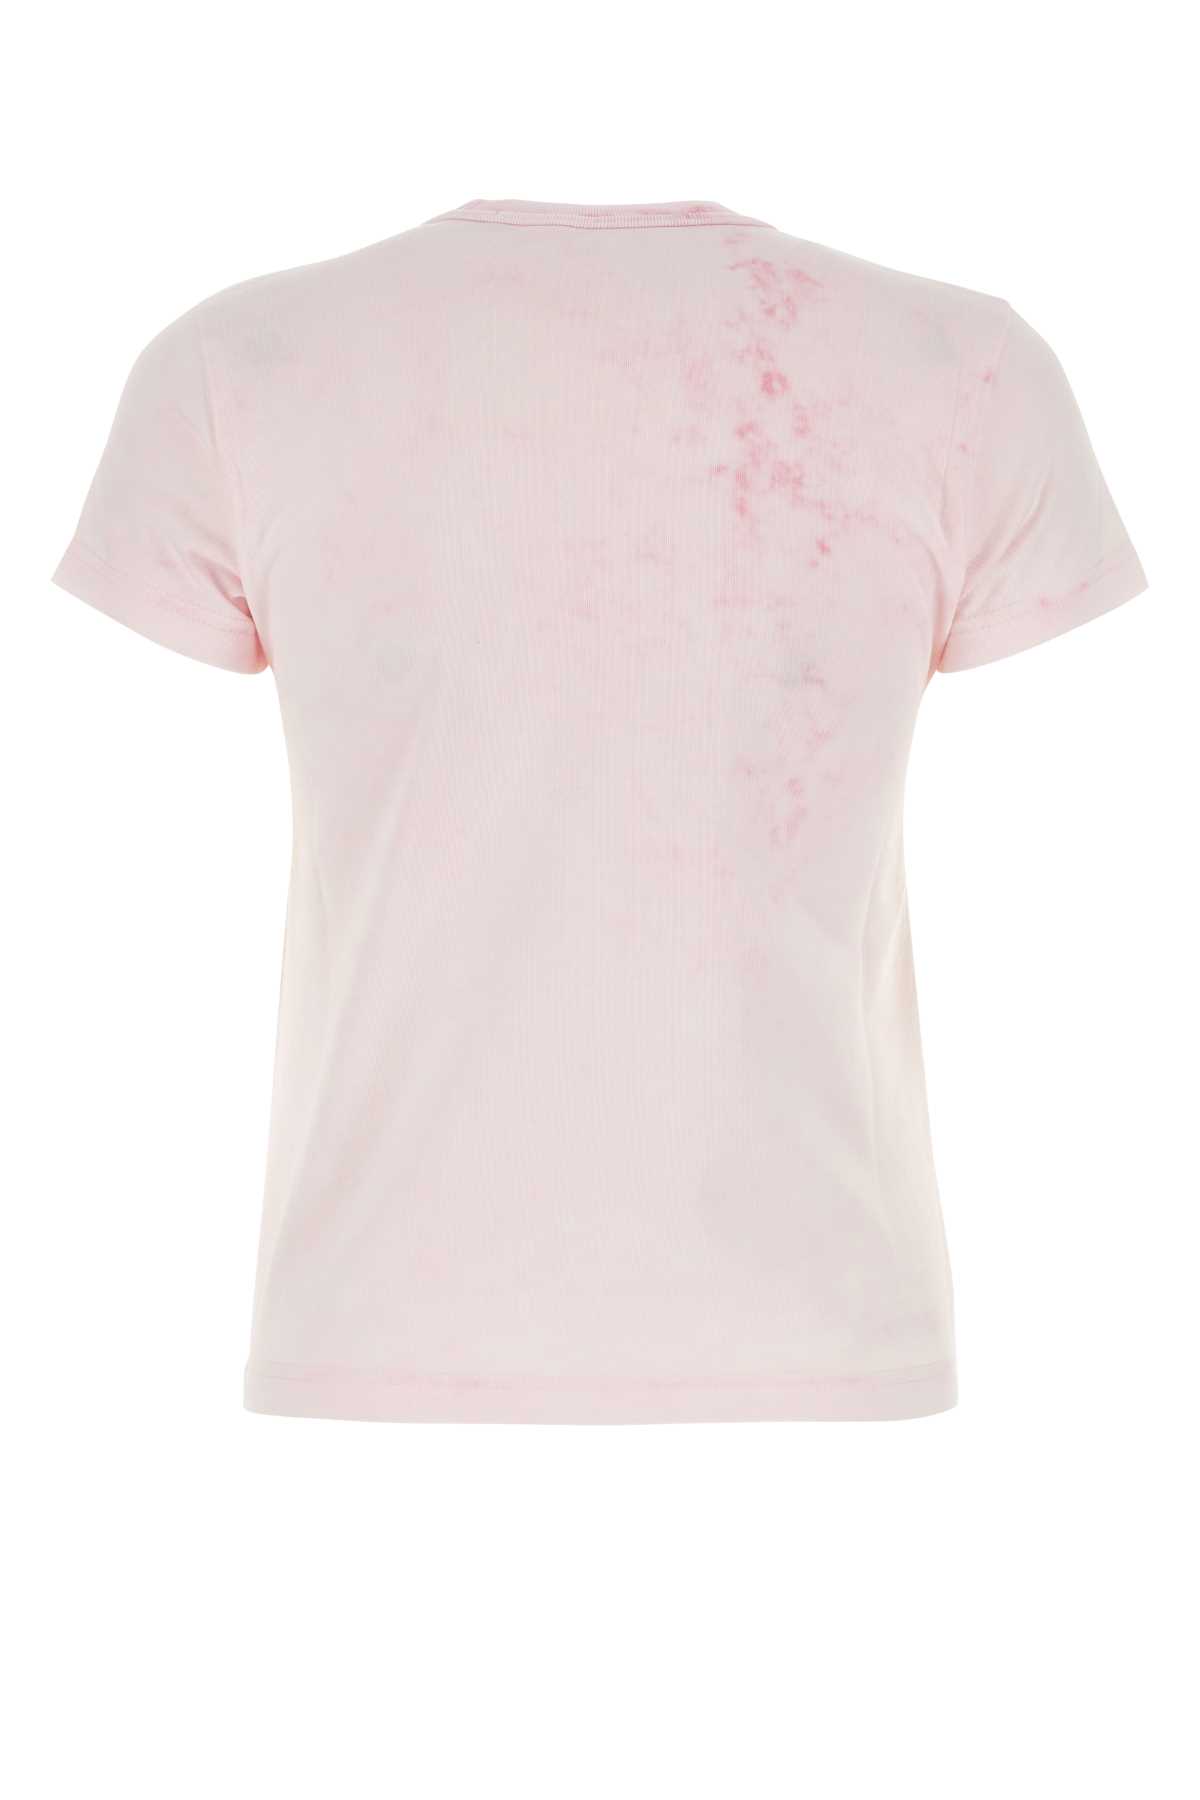 Alexander Wang Light Pink T-shirt In Ltpinkbleachout